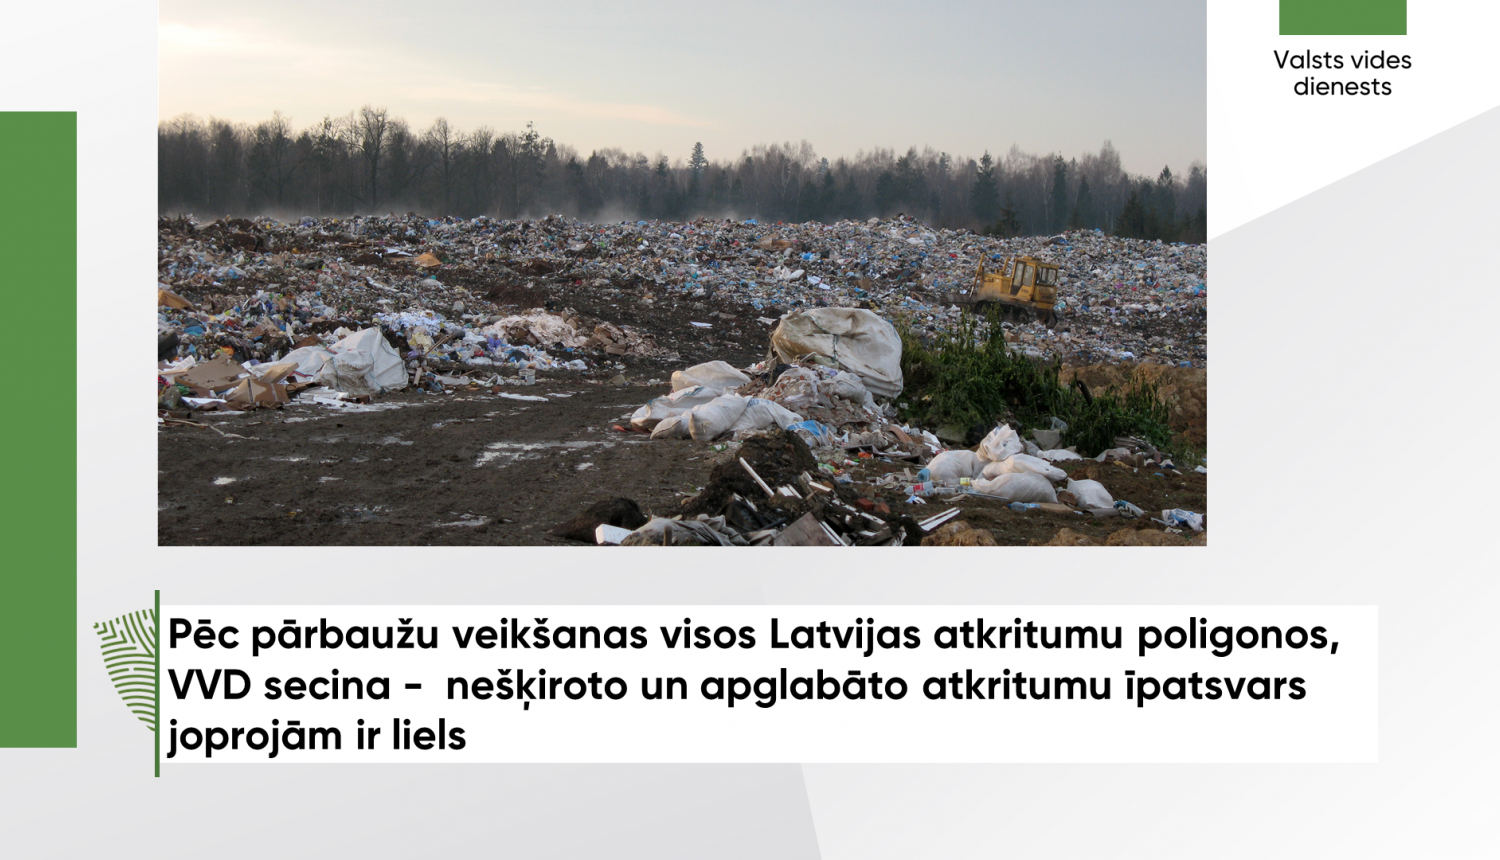 Pēc pārbaužu veikšanas visos Latvijas atkritumu poligonos, VVD secina -  nešķiroto un apglabāto atkritumu īpatsvars joprojām ir liels 